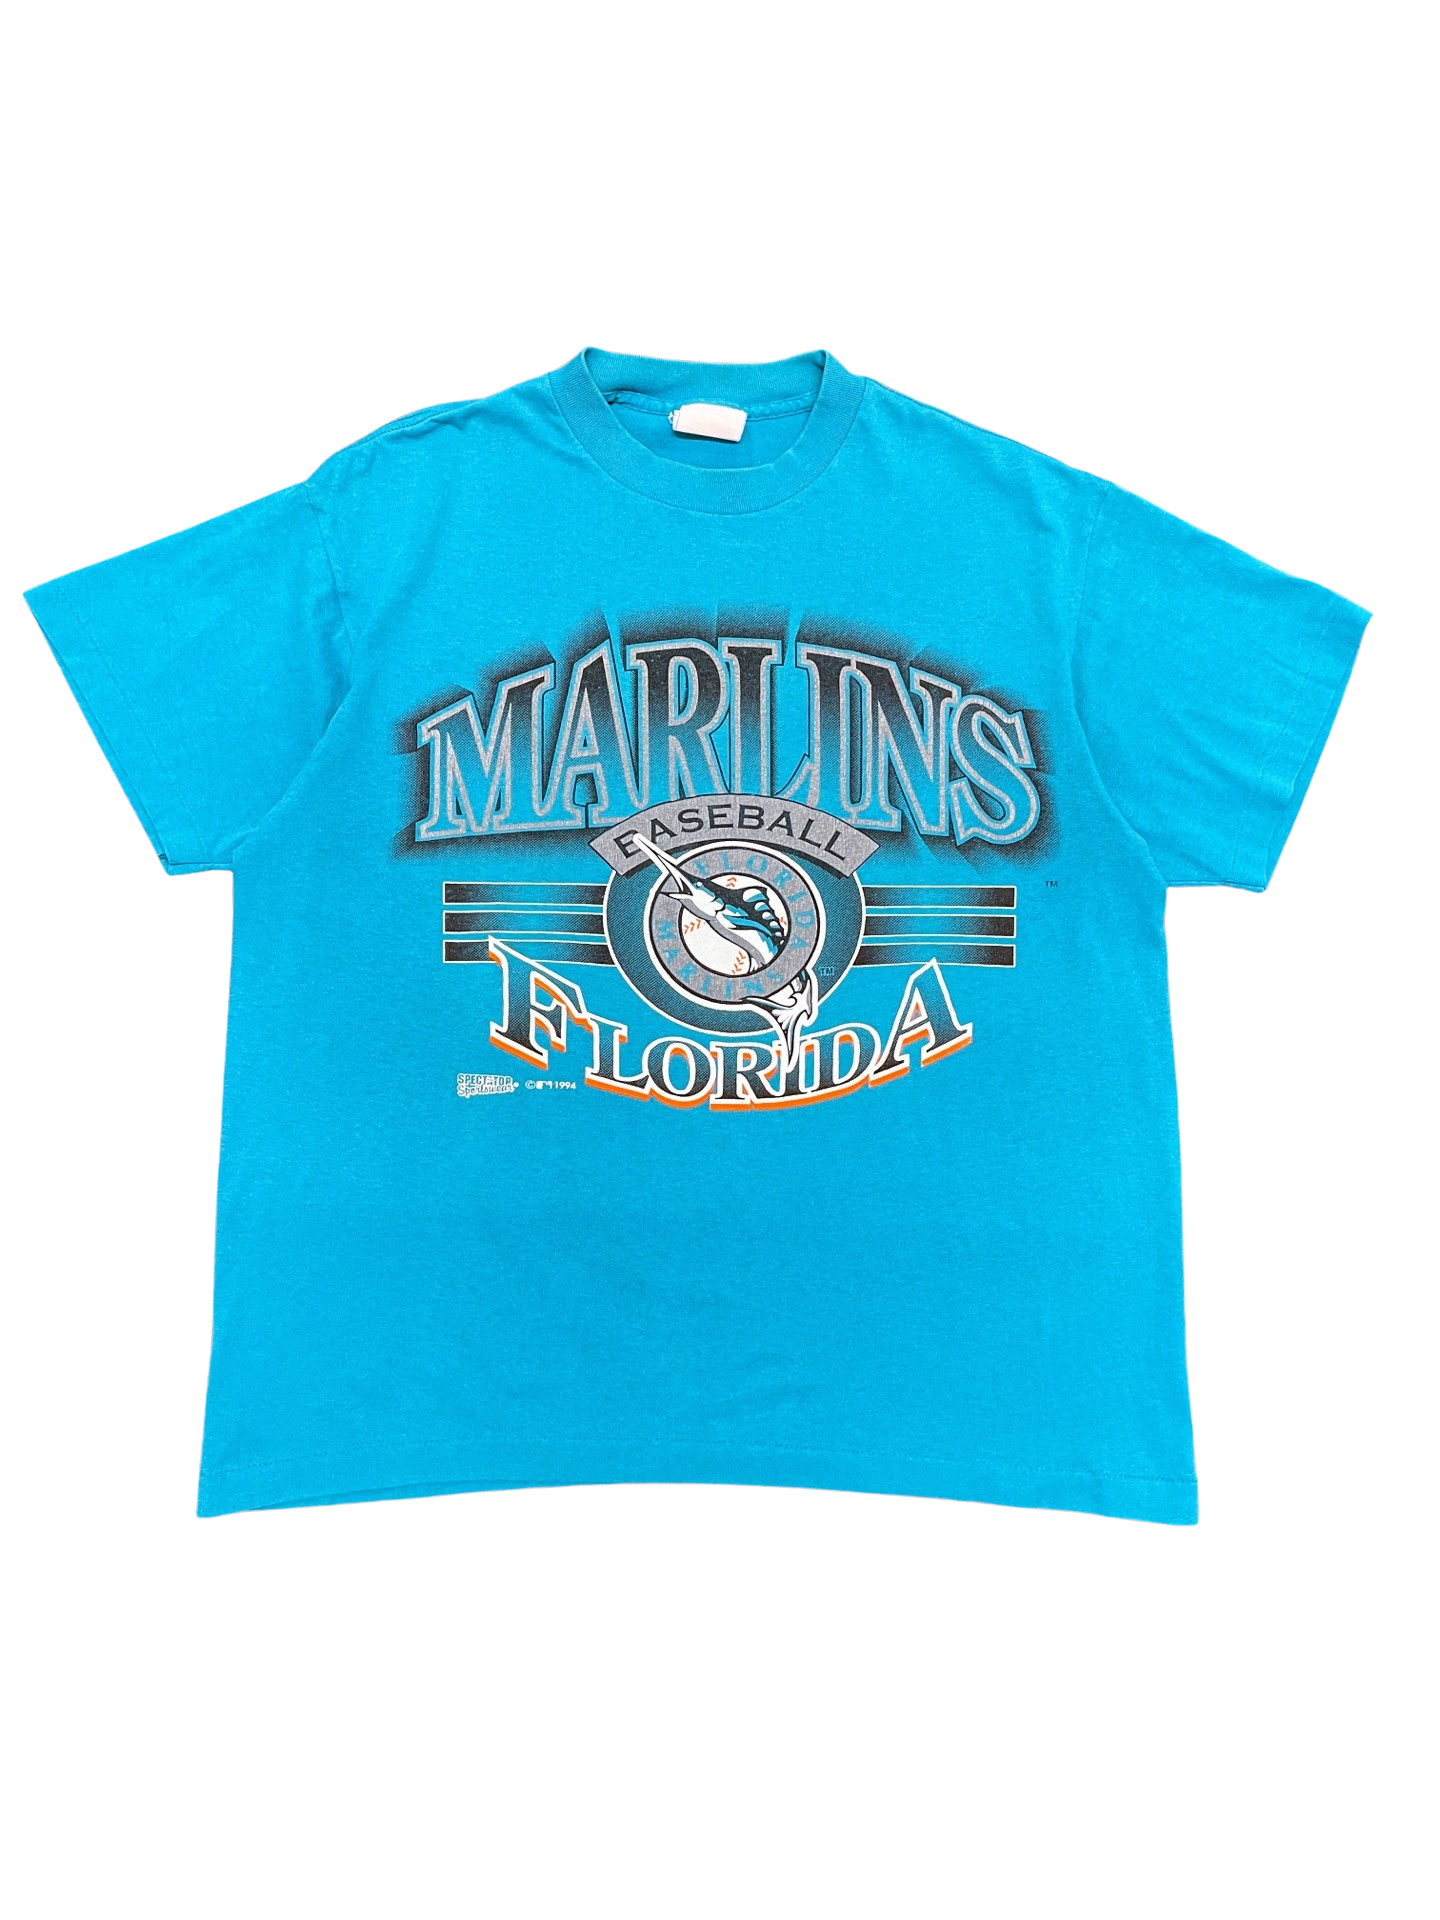 Vintage Florida Marlins t-shirt